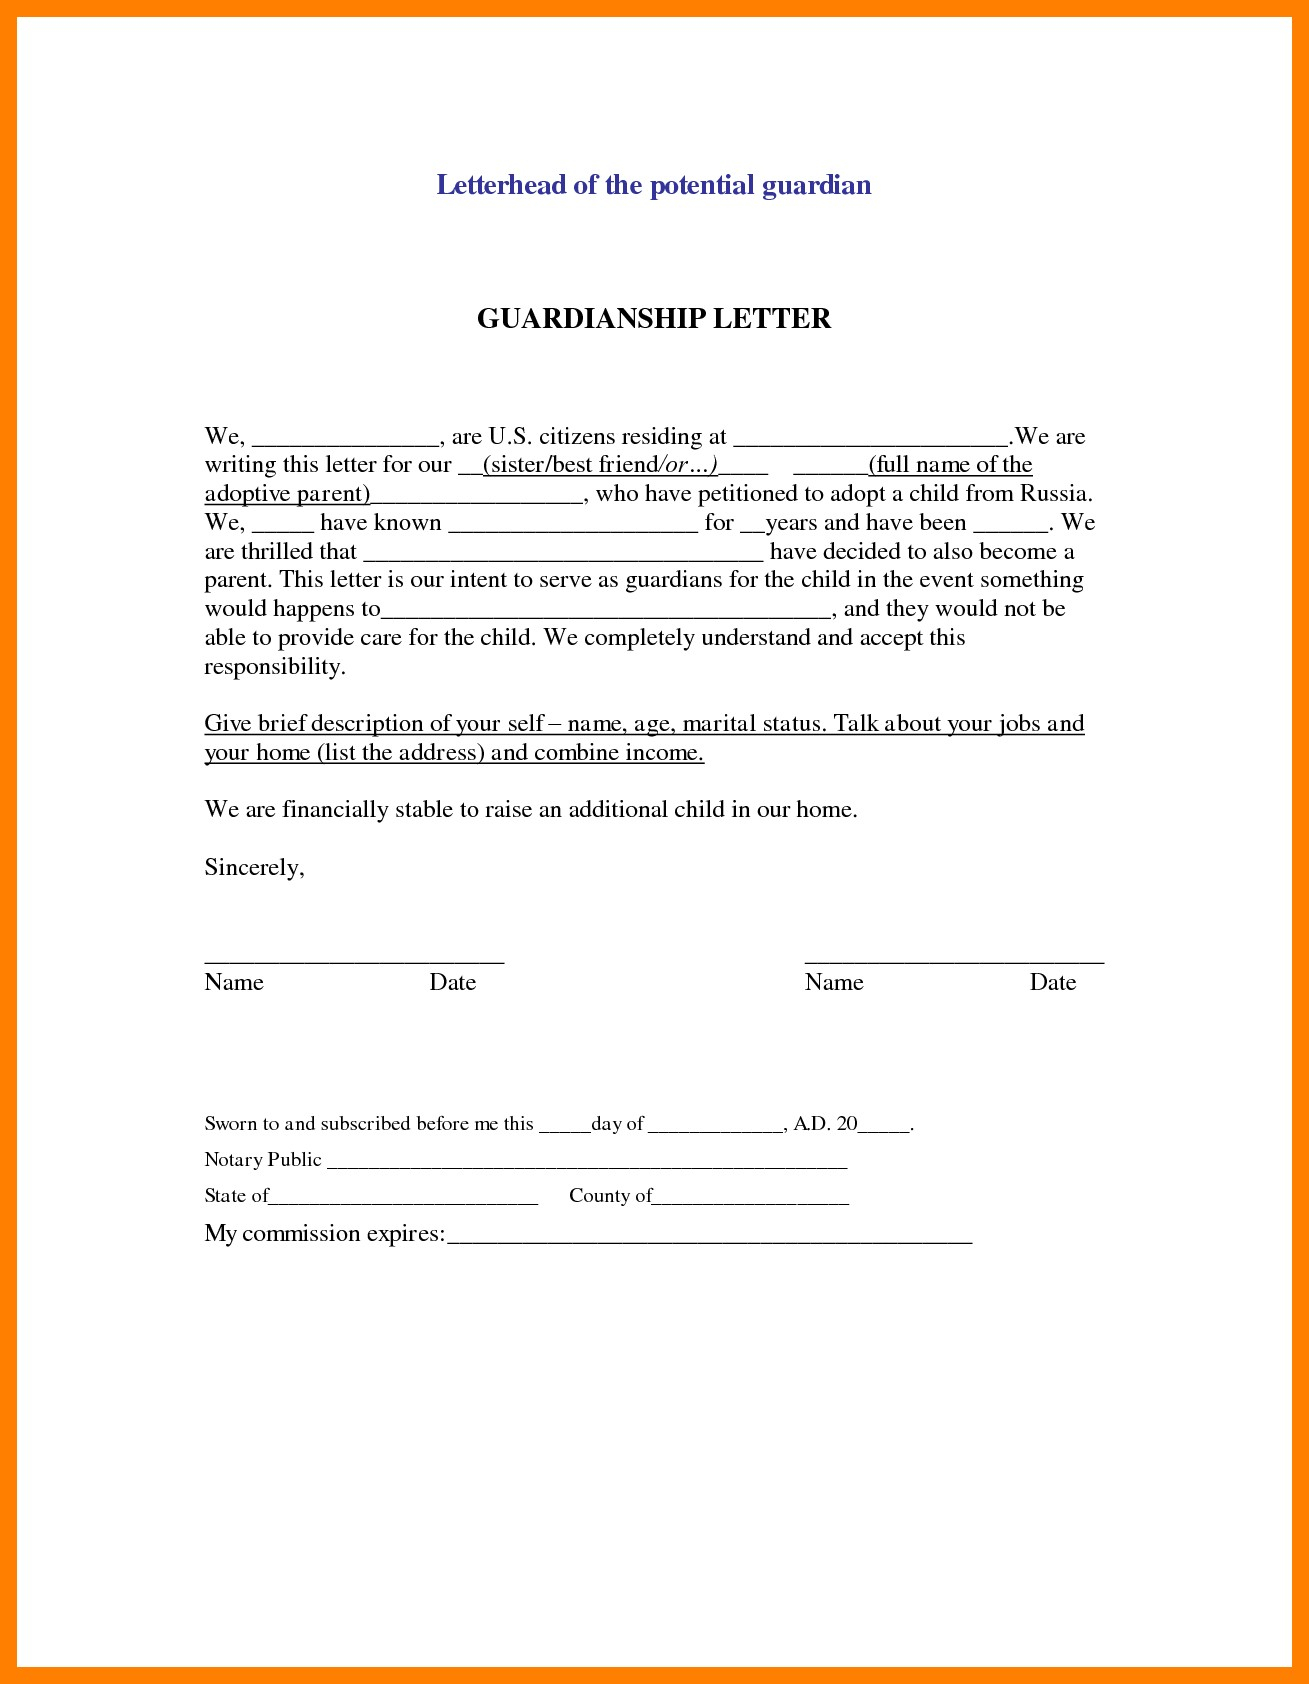 Legal Guardianship Letter Template - Sample Declaration Letter for Child Custody Child Custody Letter